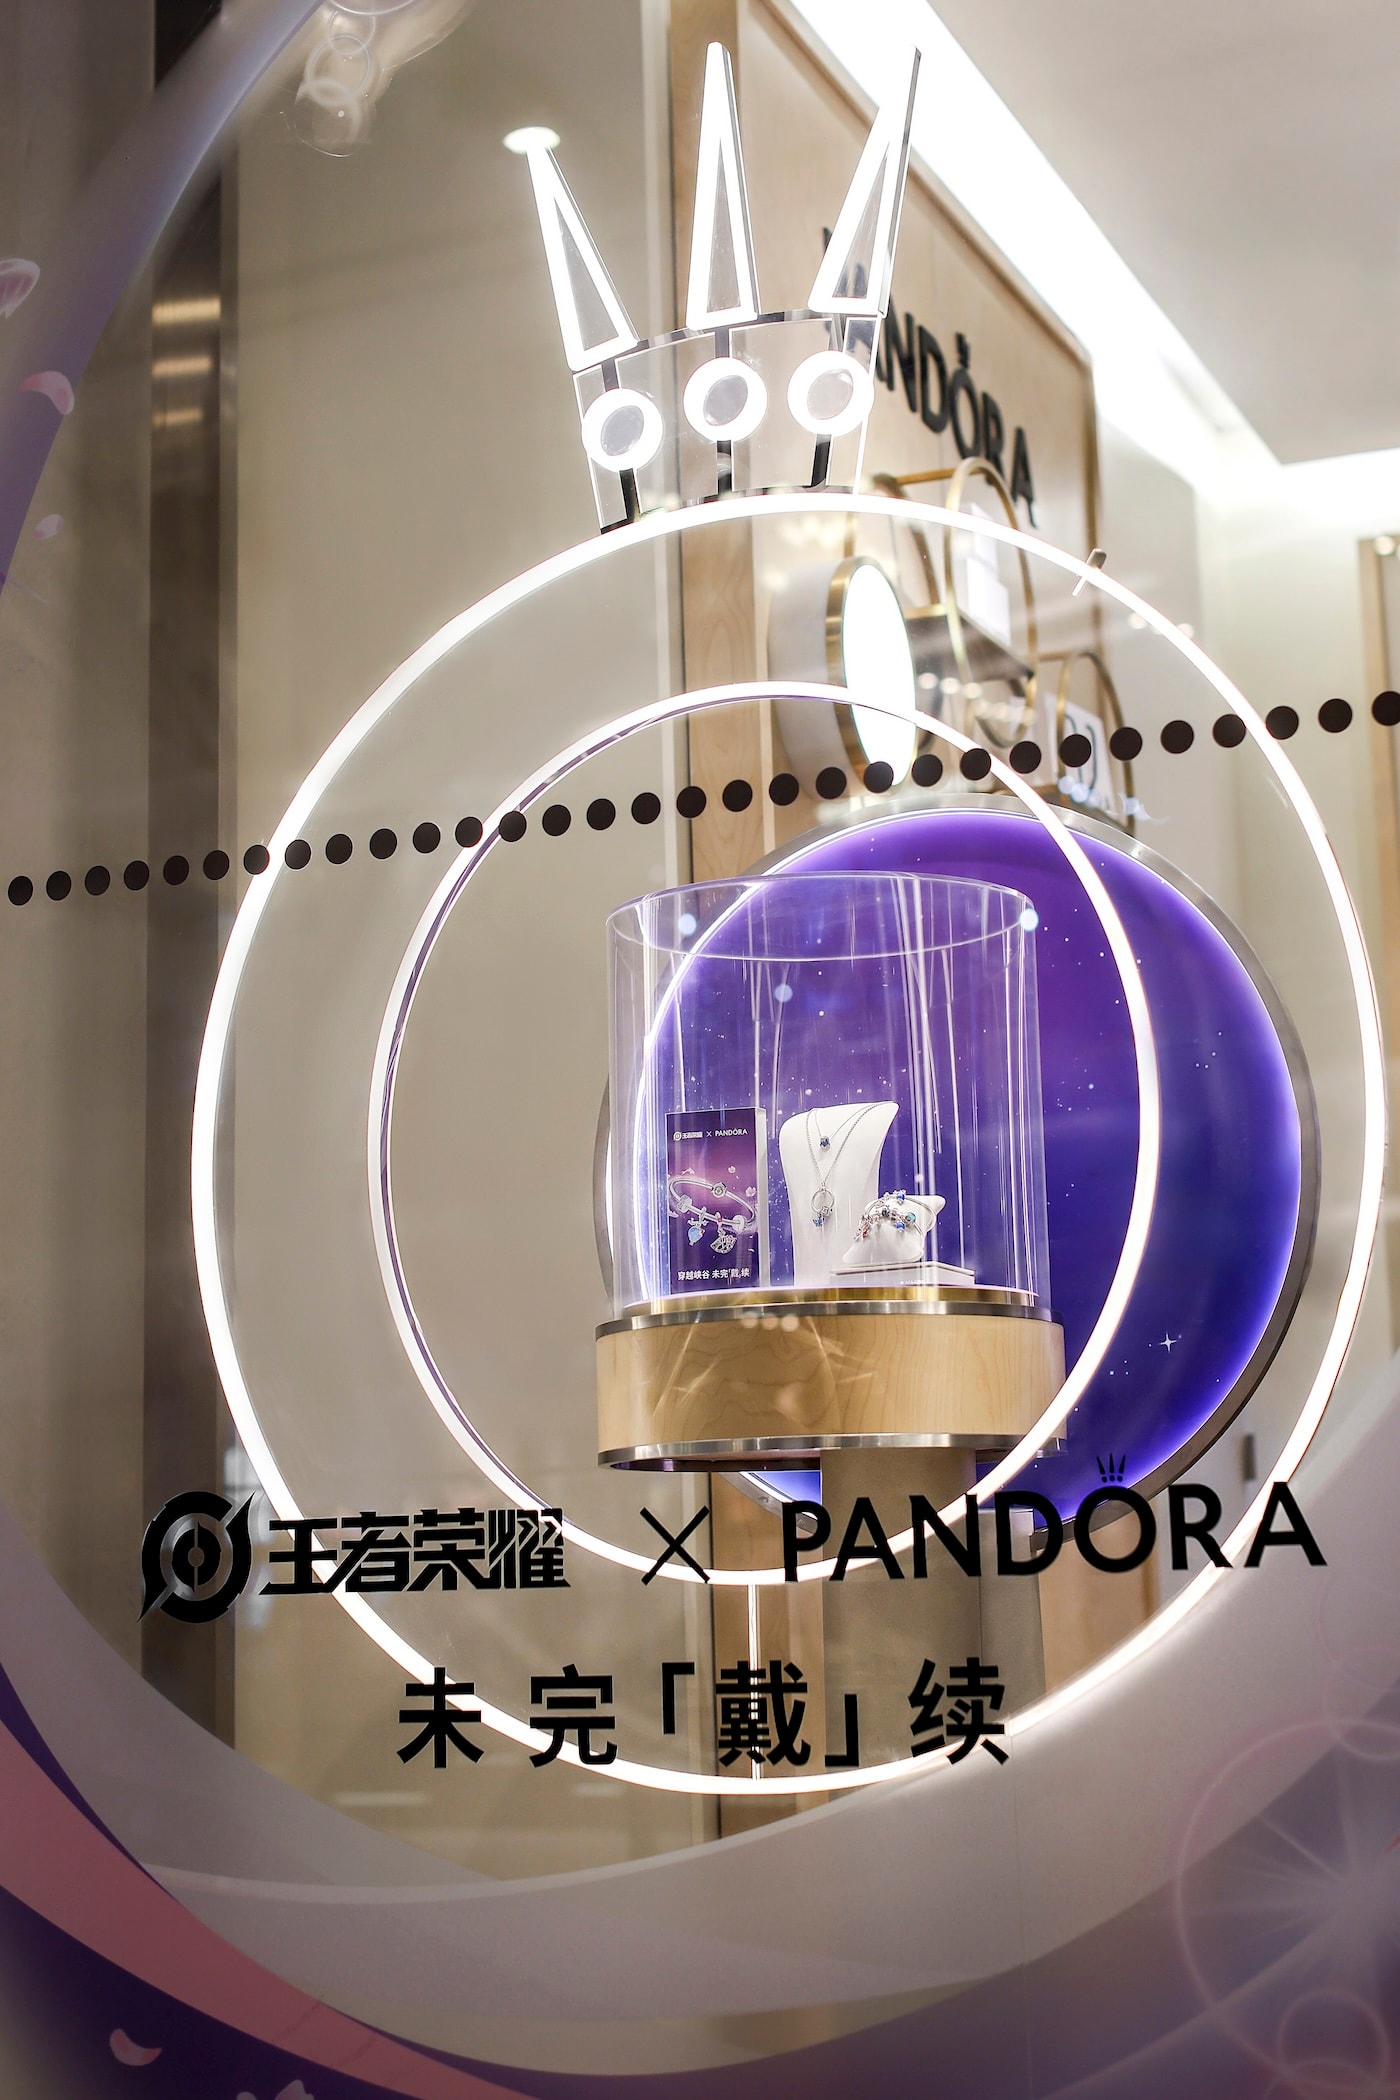 Pandora 携手《王者荣耀》打造跨界珠宝系列